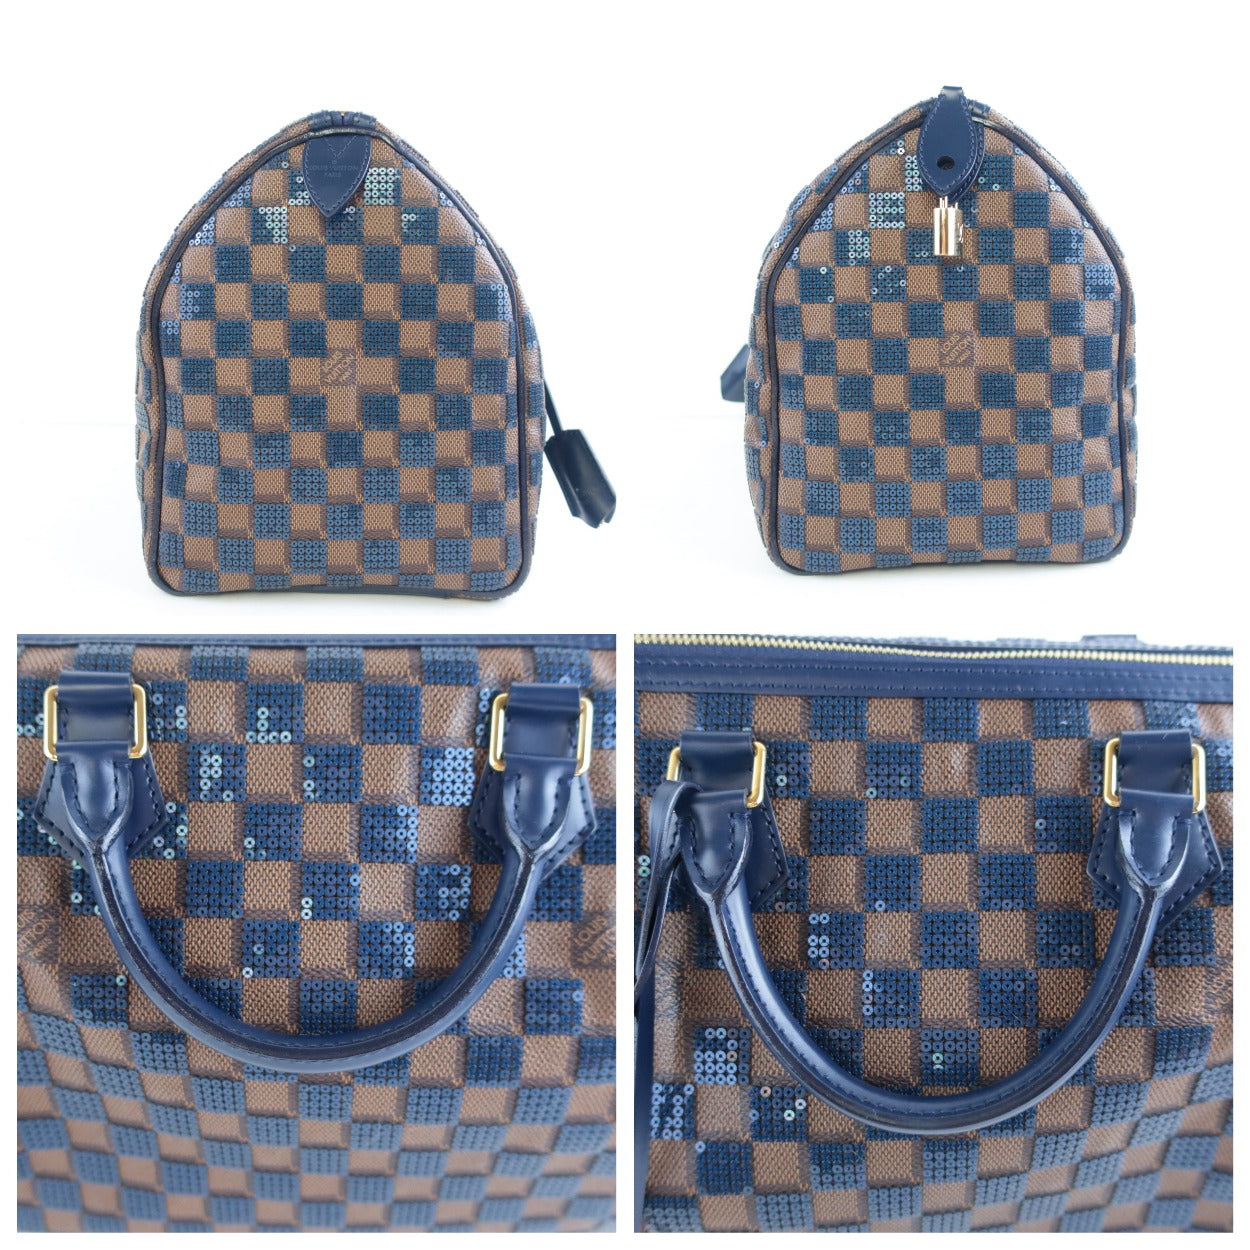 Louis Vuitton Blue Damier Paillettes Canvas Speedy 30 Bag., Lot #58021